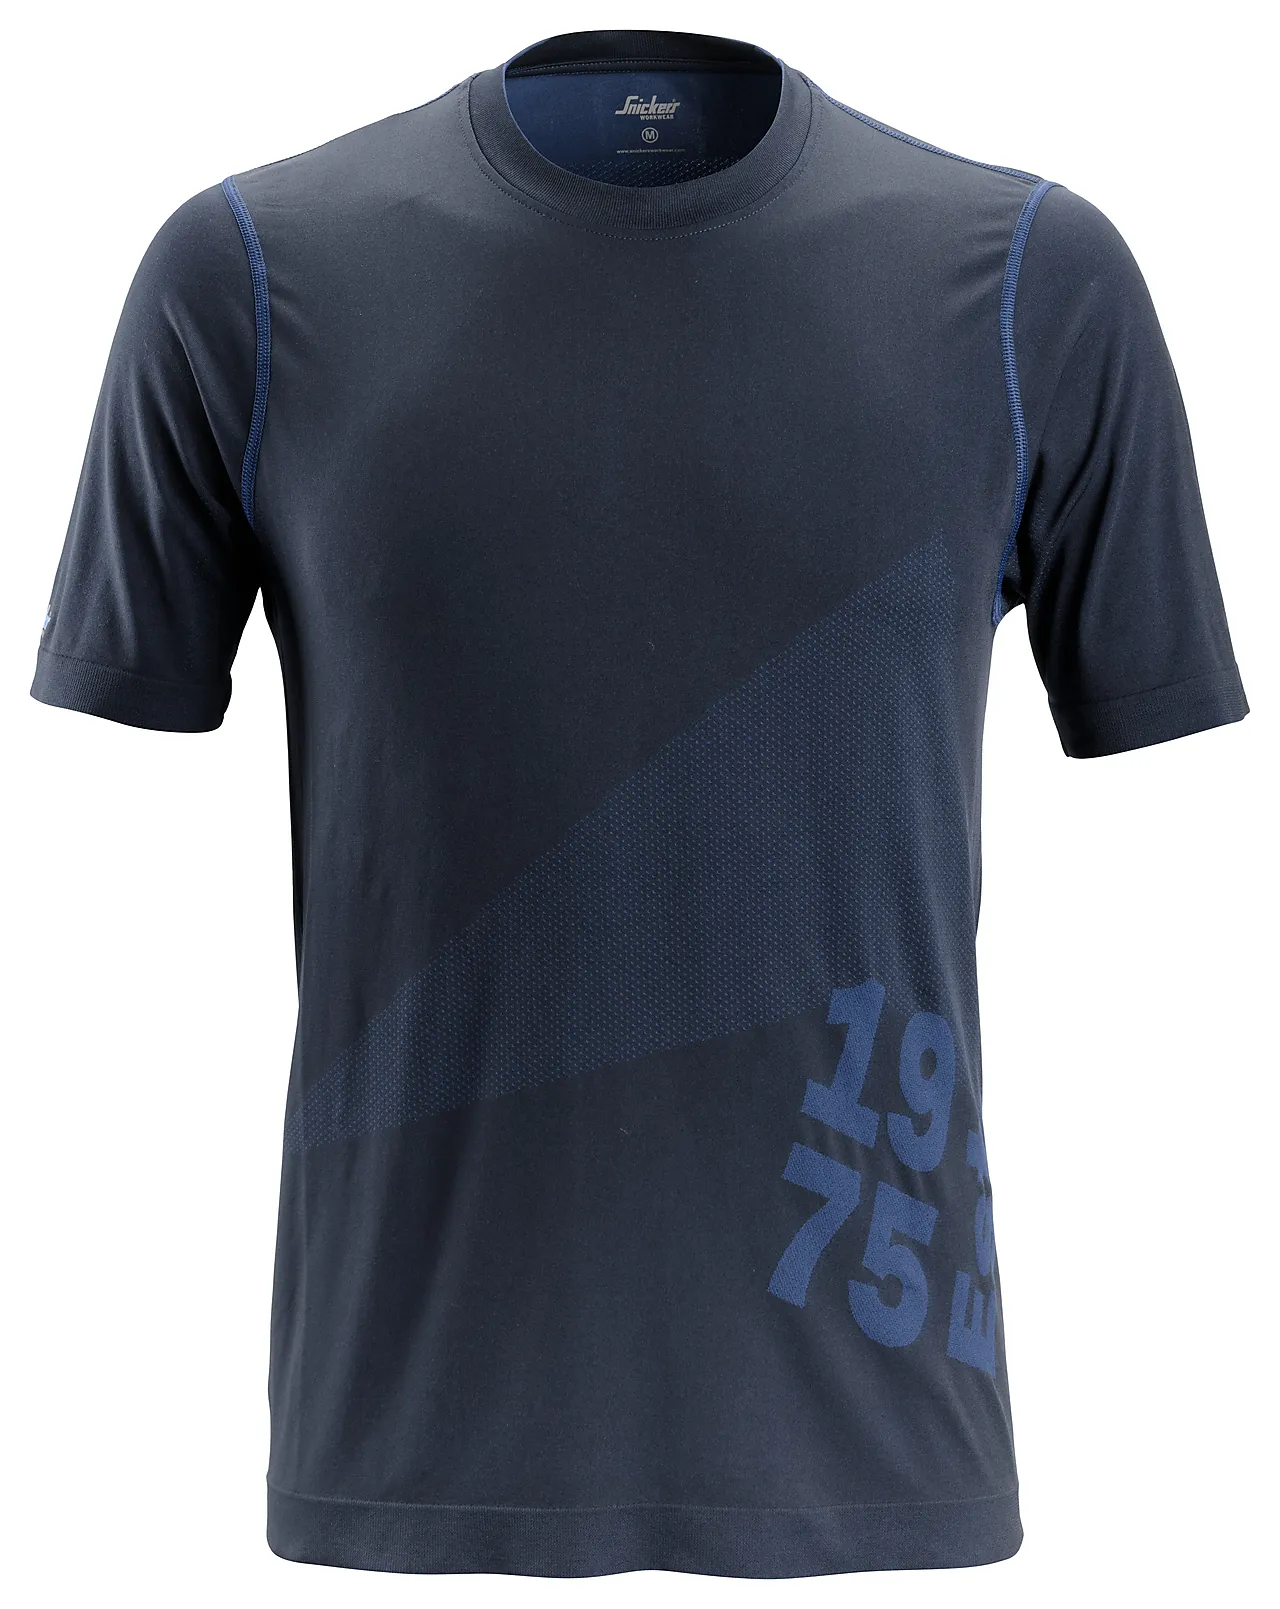 T-skjorte 2519 mørkeblå str M Snickers 37,5 tech flexiwork